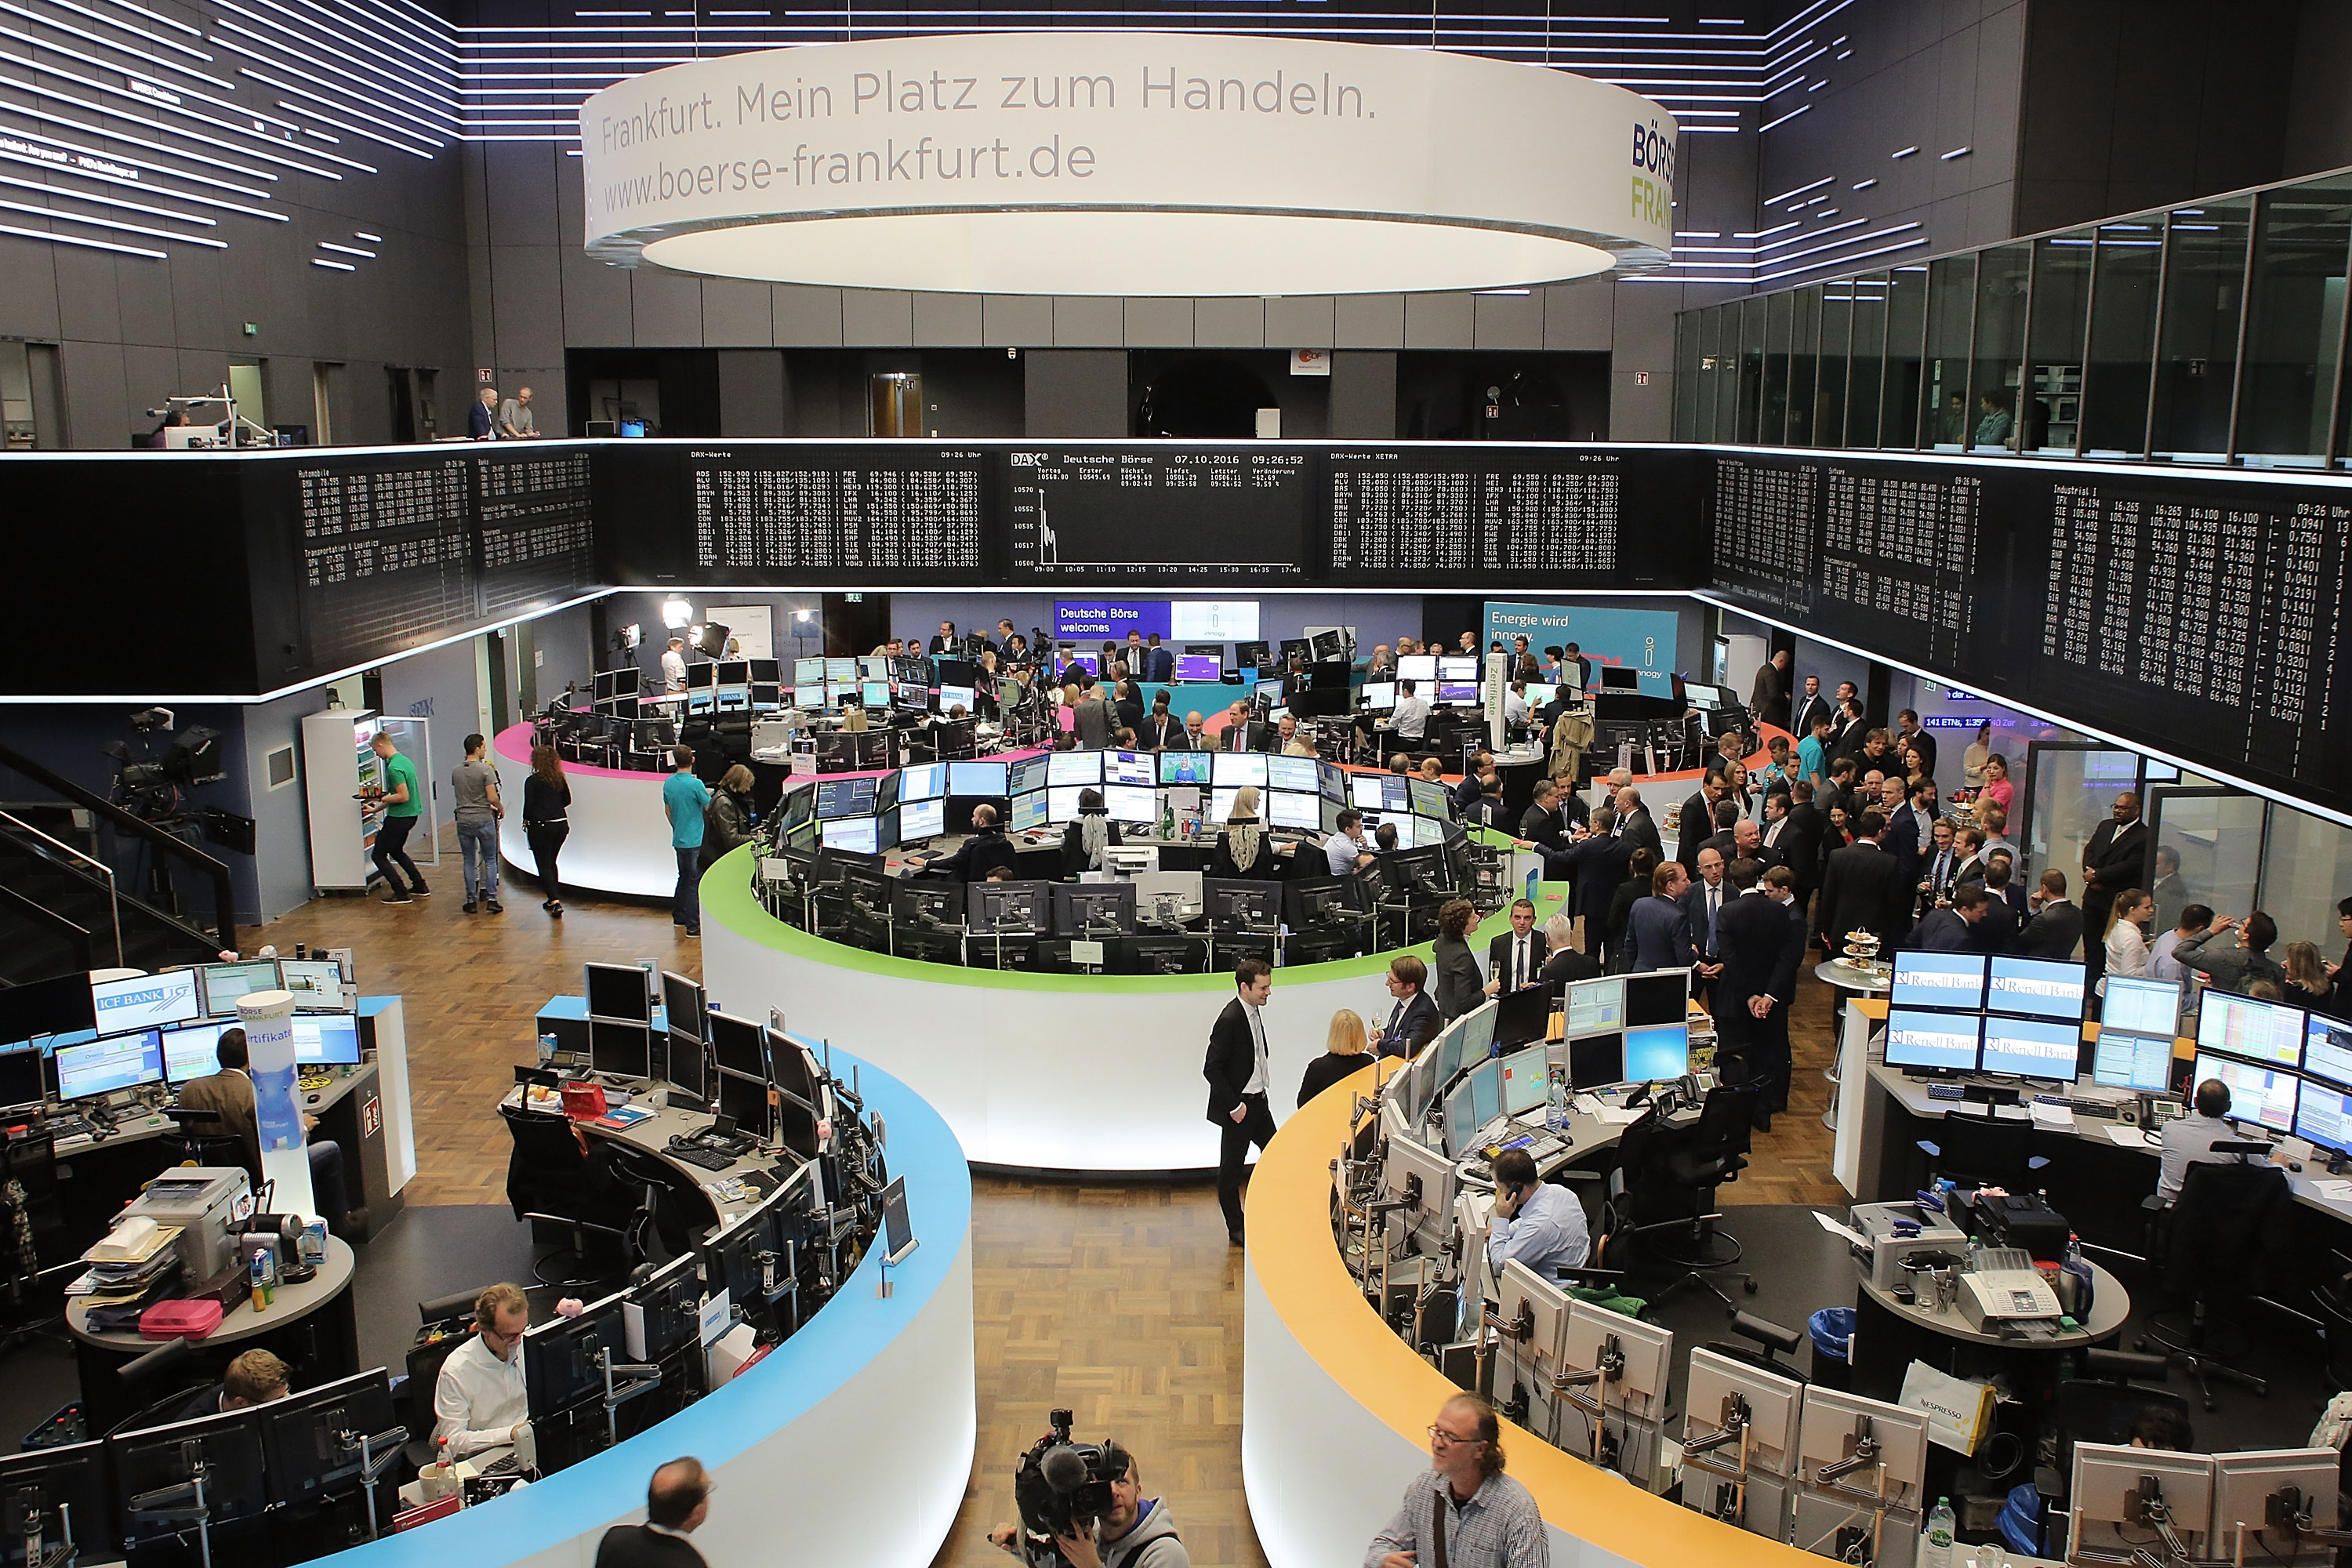 Vista del piso de remates de la Bolsa de Frankfurt (Gety Images)